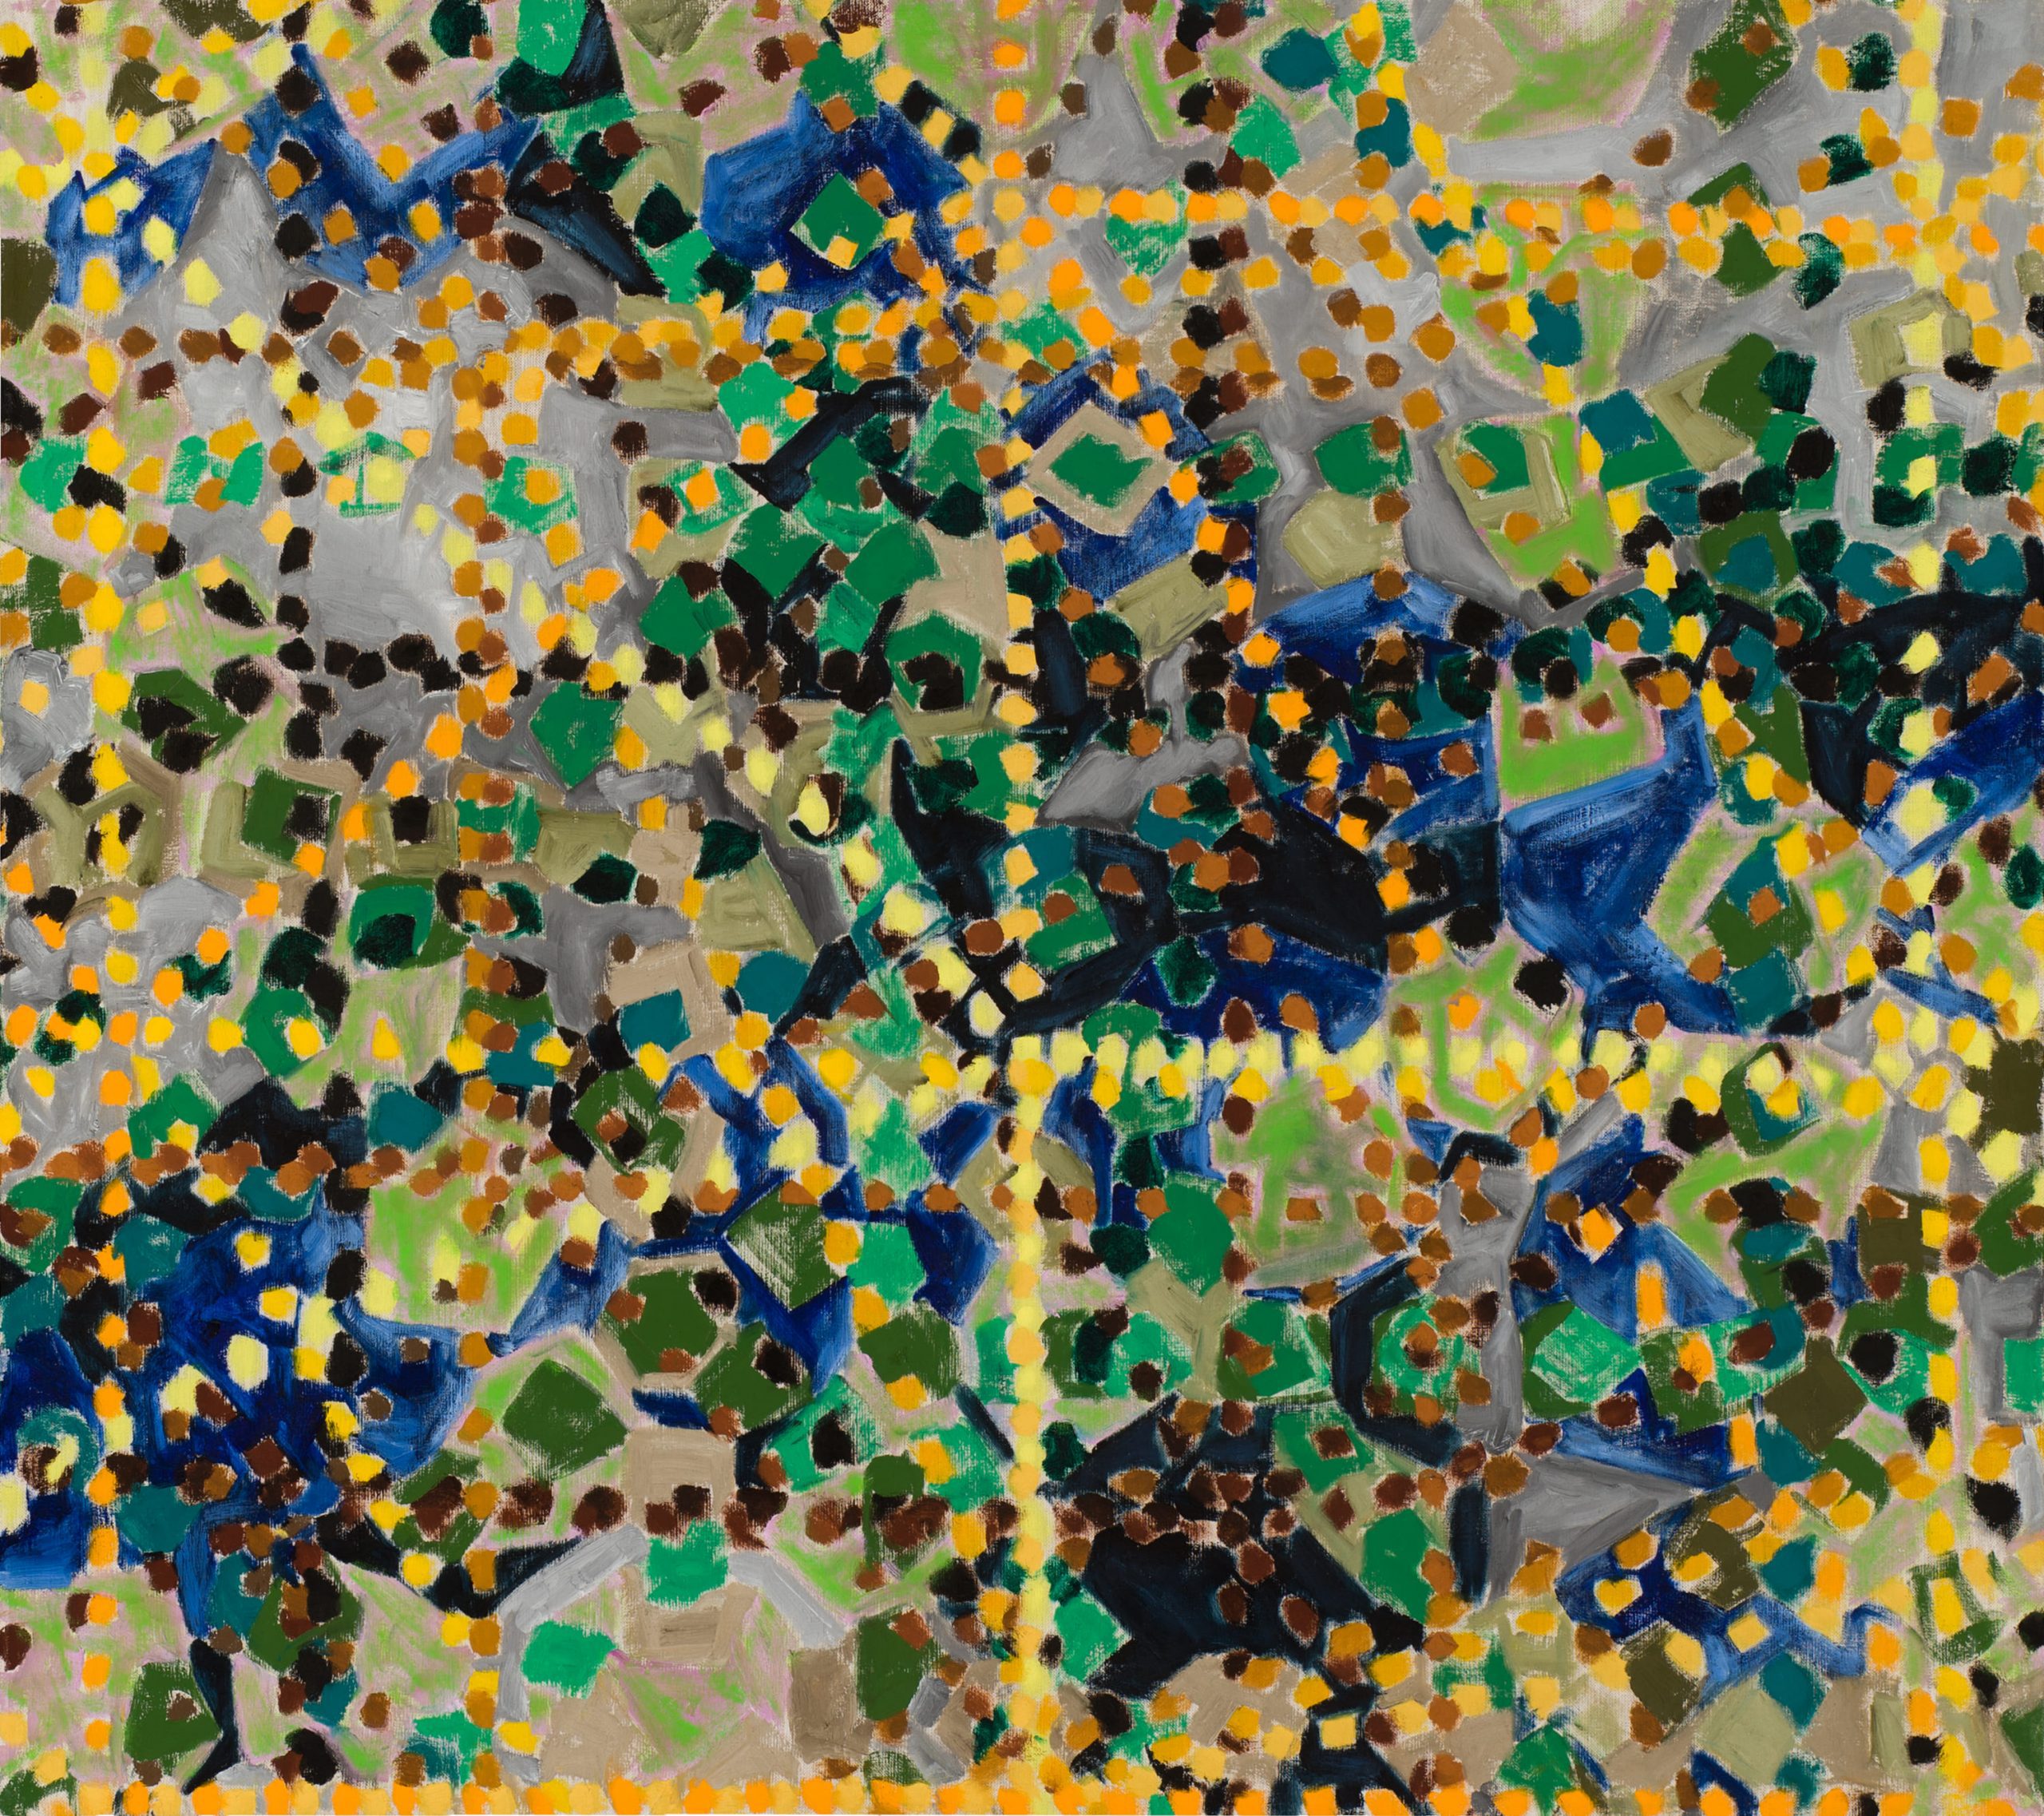 15_弗拉基米爾・可可利亞，《樹葉》，2008，油彩、畫布，128.2 x 114 公分。藝術家與臺北市立美術館提供。